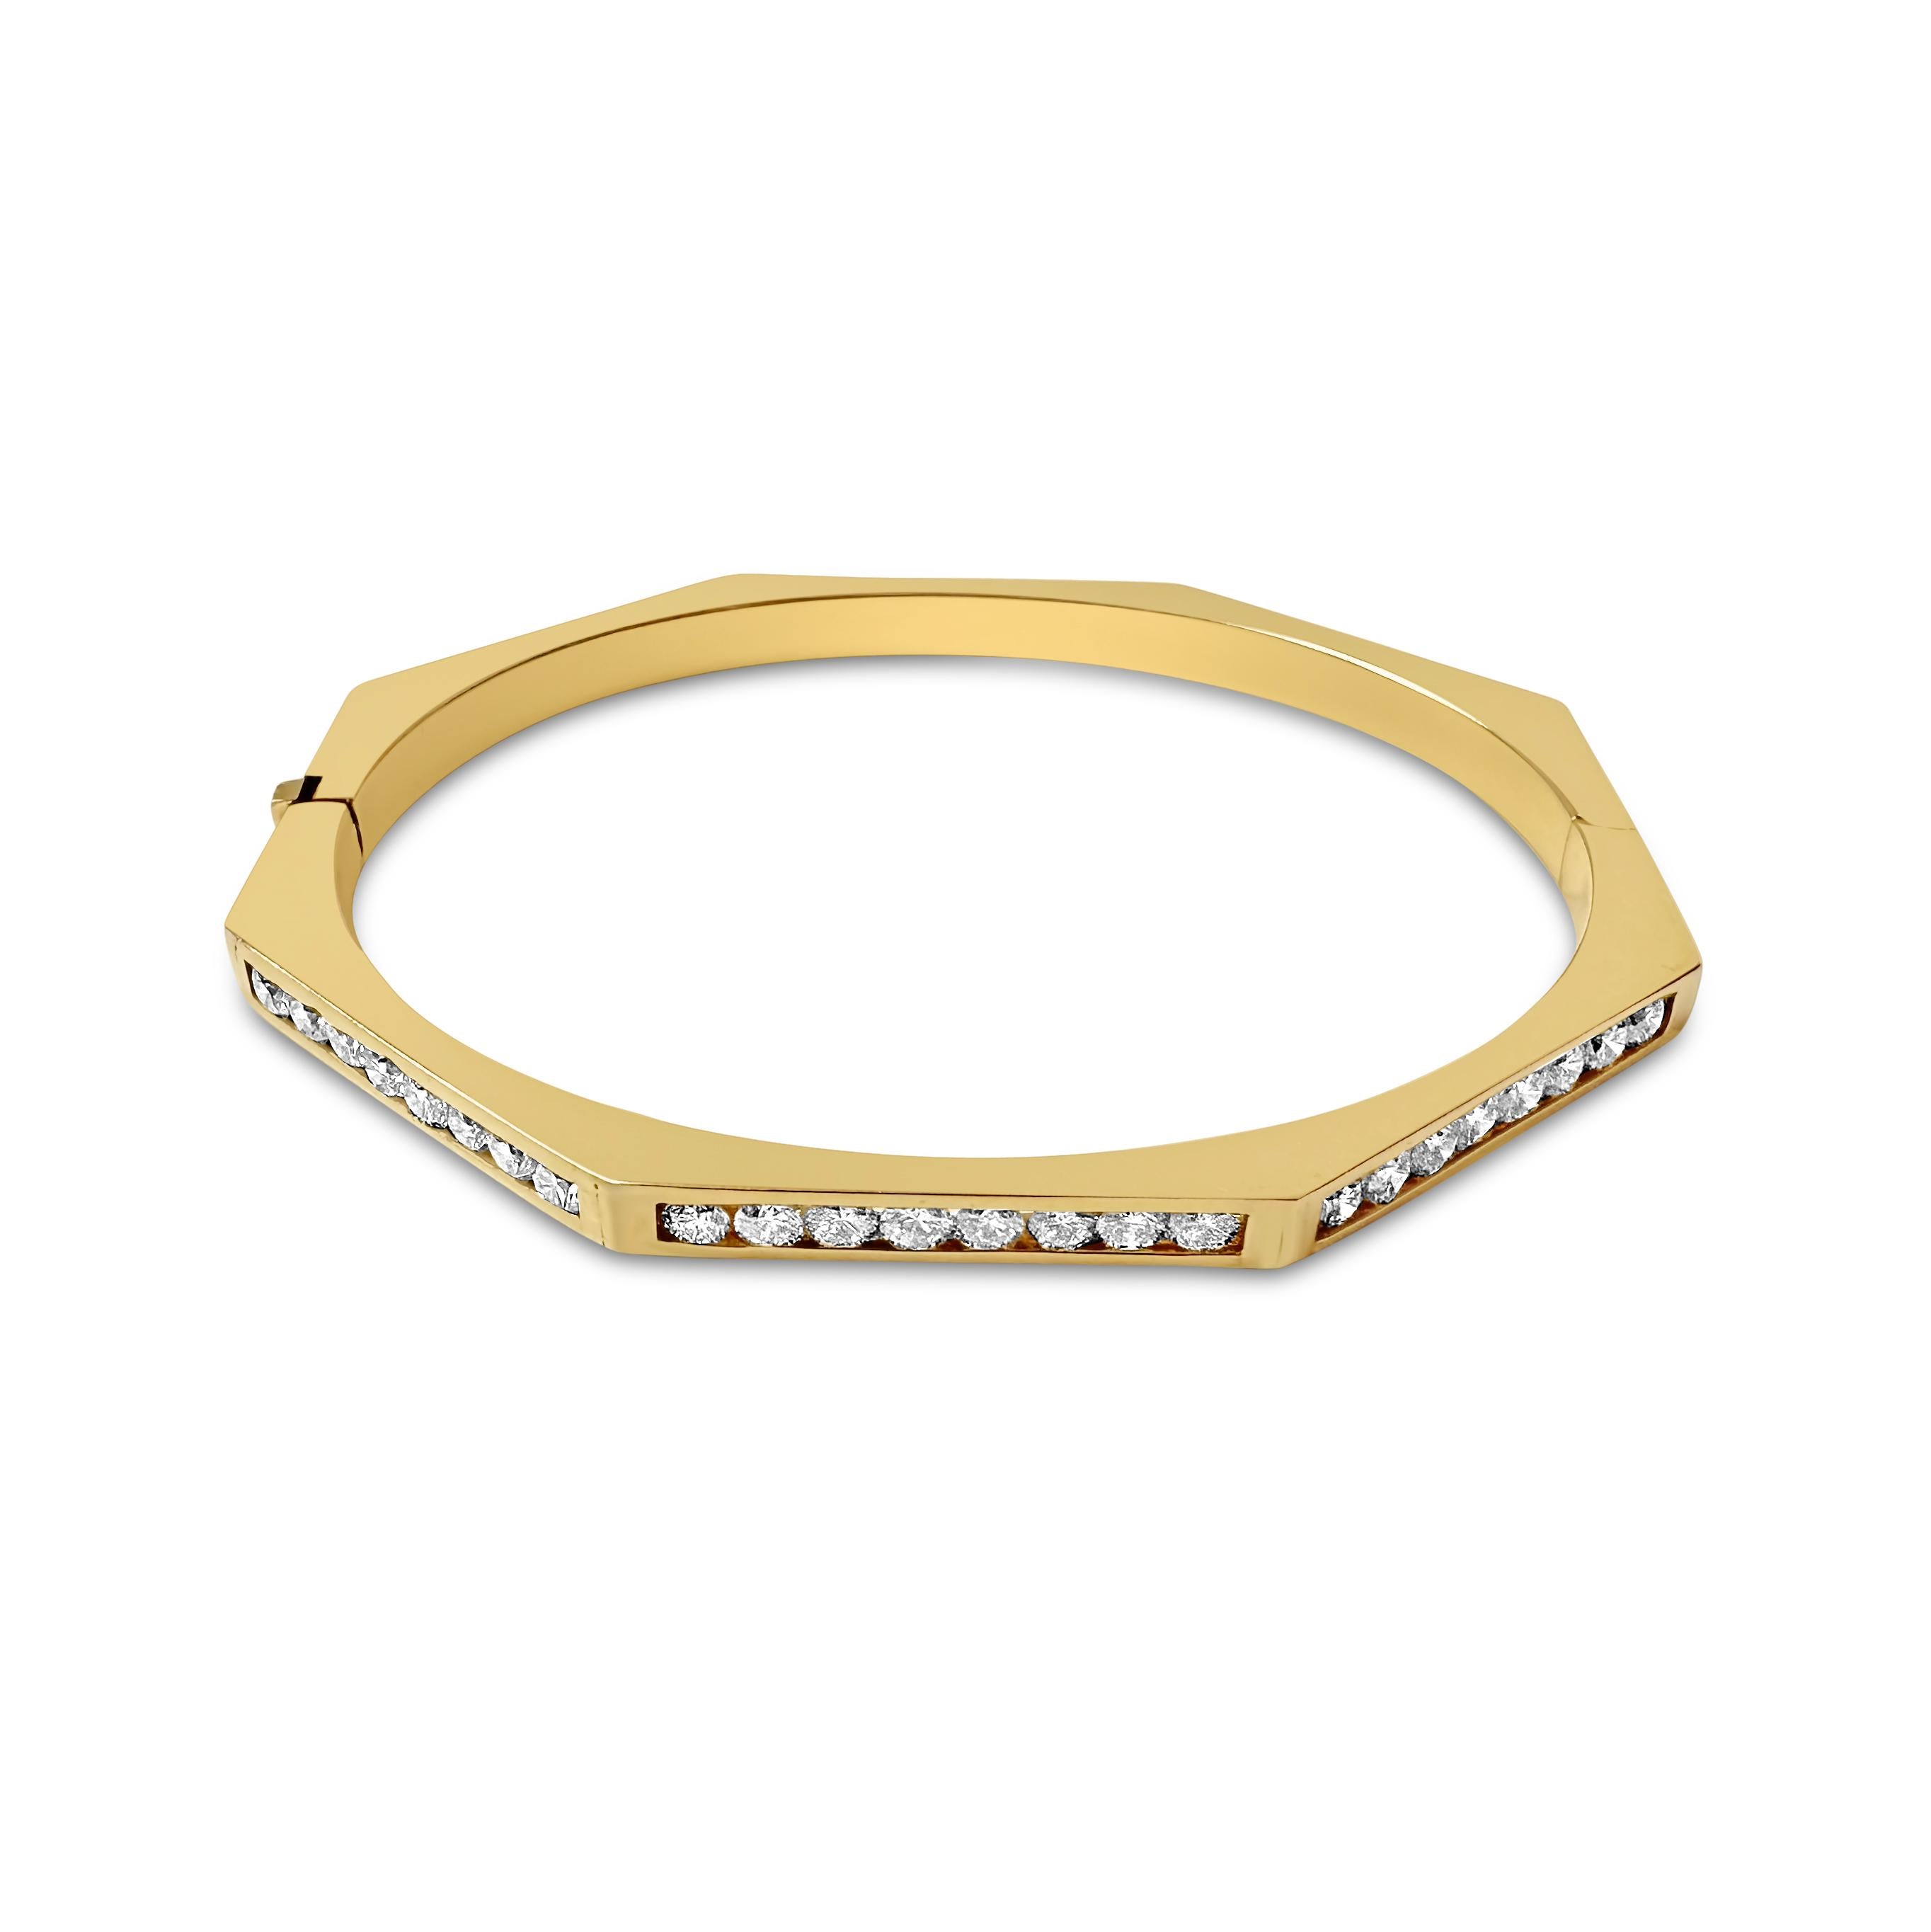 14KY Armband 3.8MM OCT mit 27 runden 2.2mm Diamanten 1.30cts G-H VS-SI

Entdecken Sie den Luxus des 14K Gelbgold 3.8MM OCT Armbands von Manart Gold & Diamond Jewelry. Verziert mit 27 runden Diamanten von 2,2 mm Durchmesser, insgesamt 1,30ct, Farbe